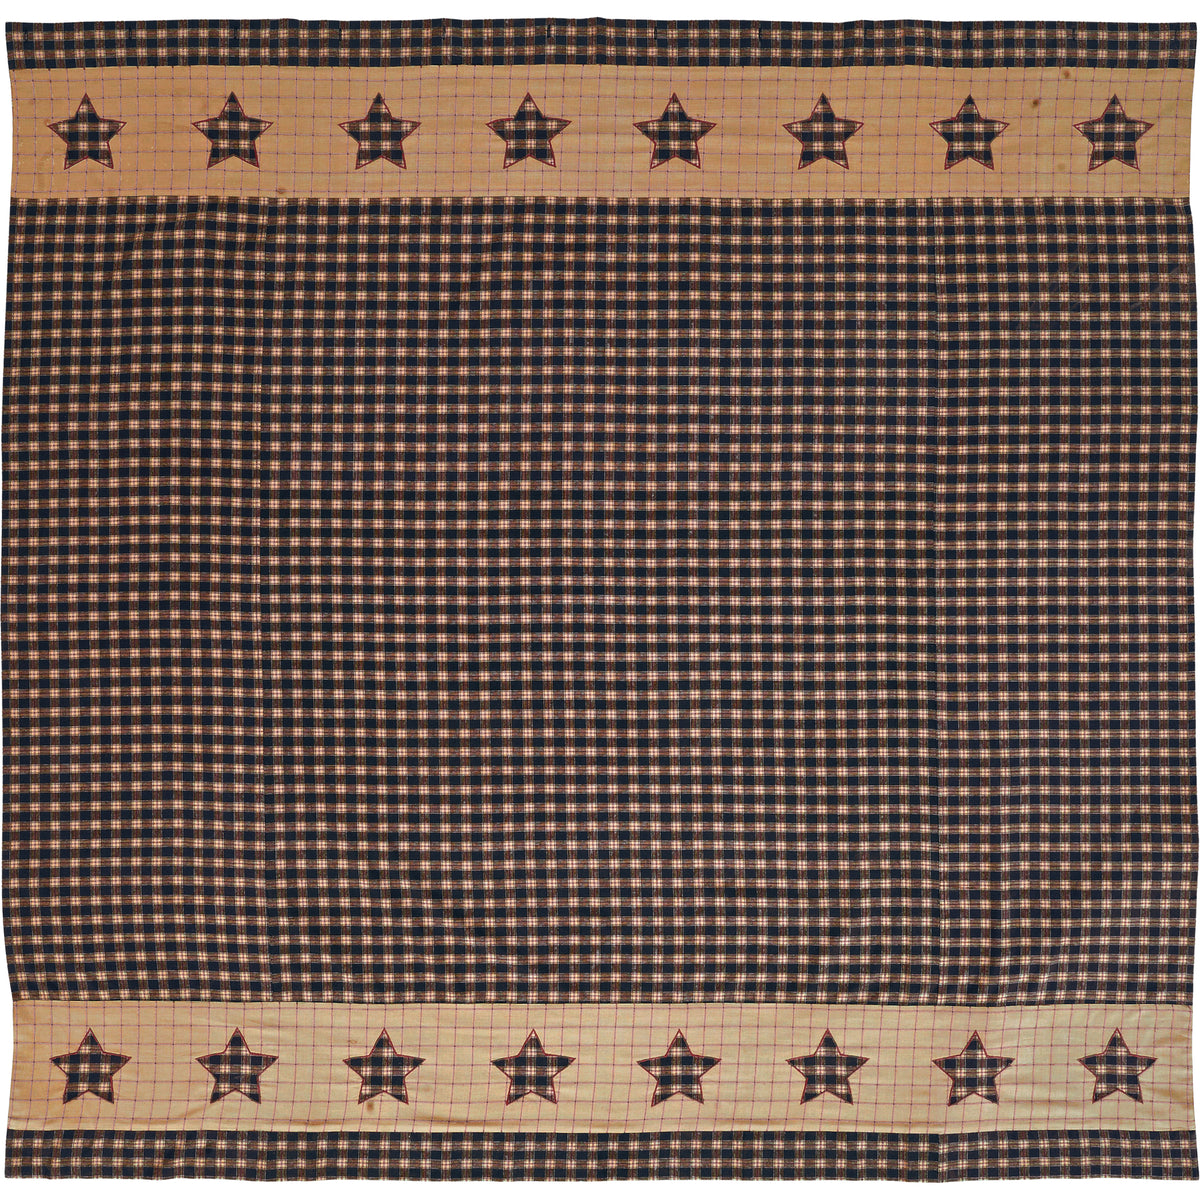 Mayflower Market Bingham Star Shower Curtain 72x72 By VHC Brands